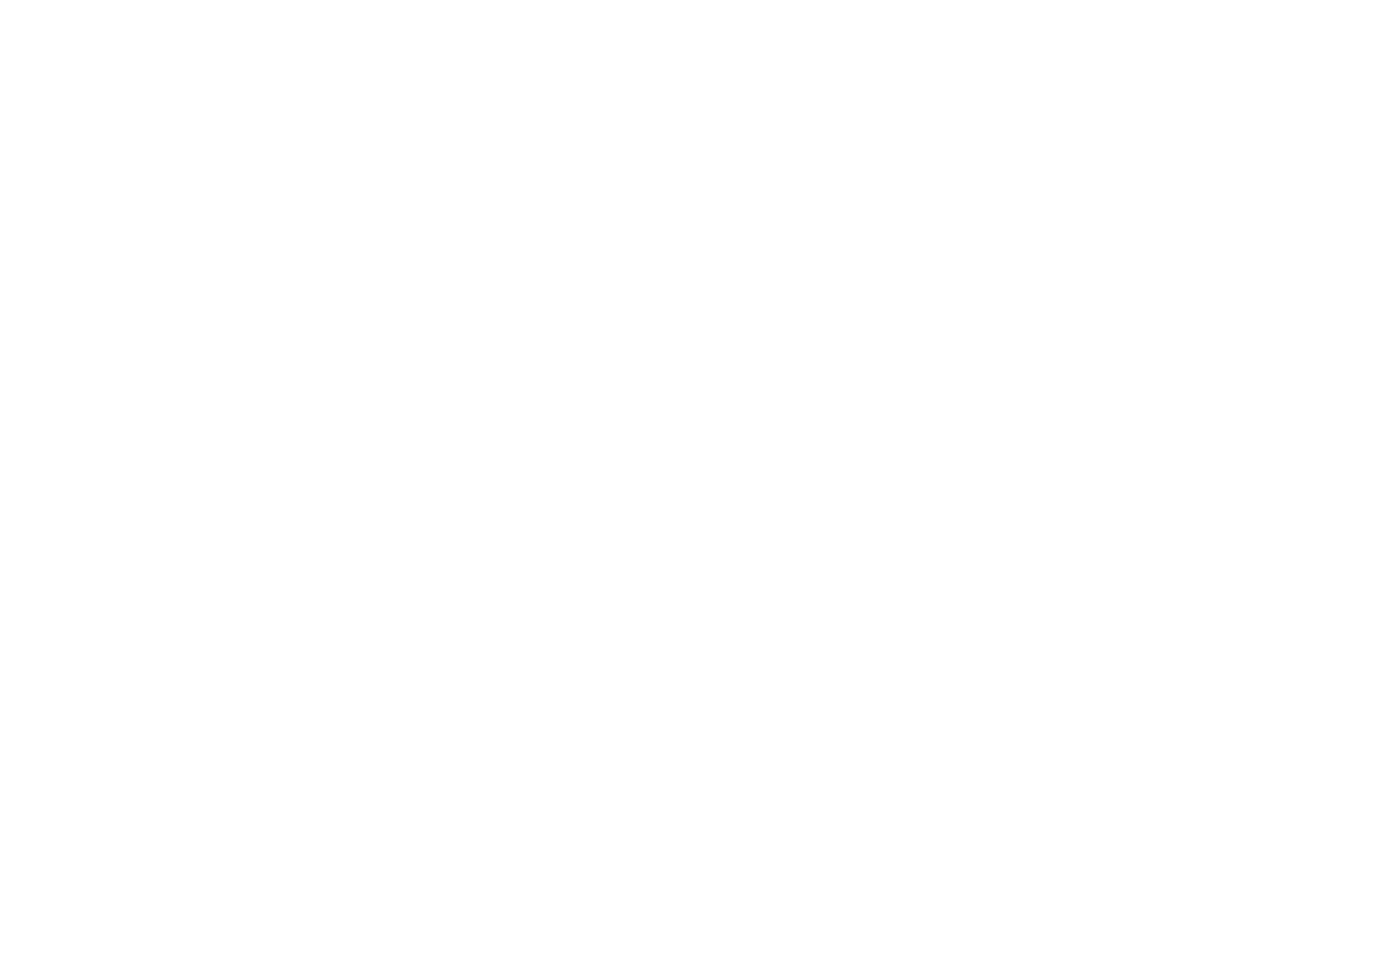 ASTORIA DESIGN BUILD, LLC